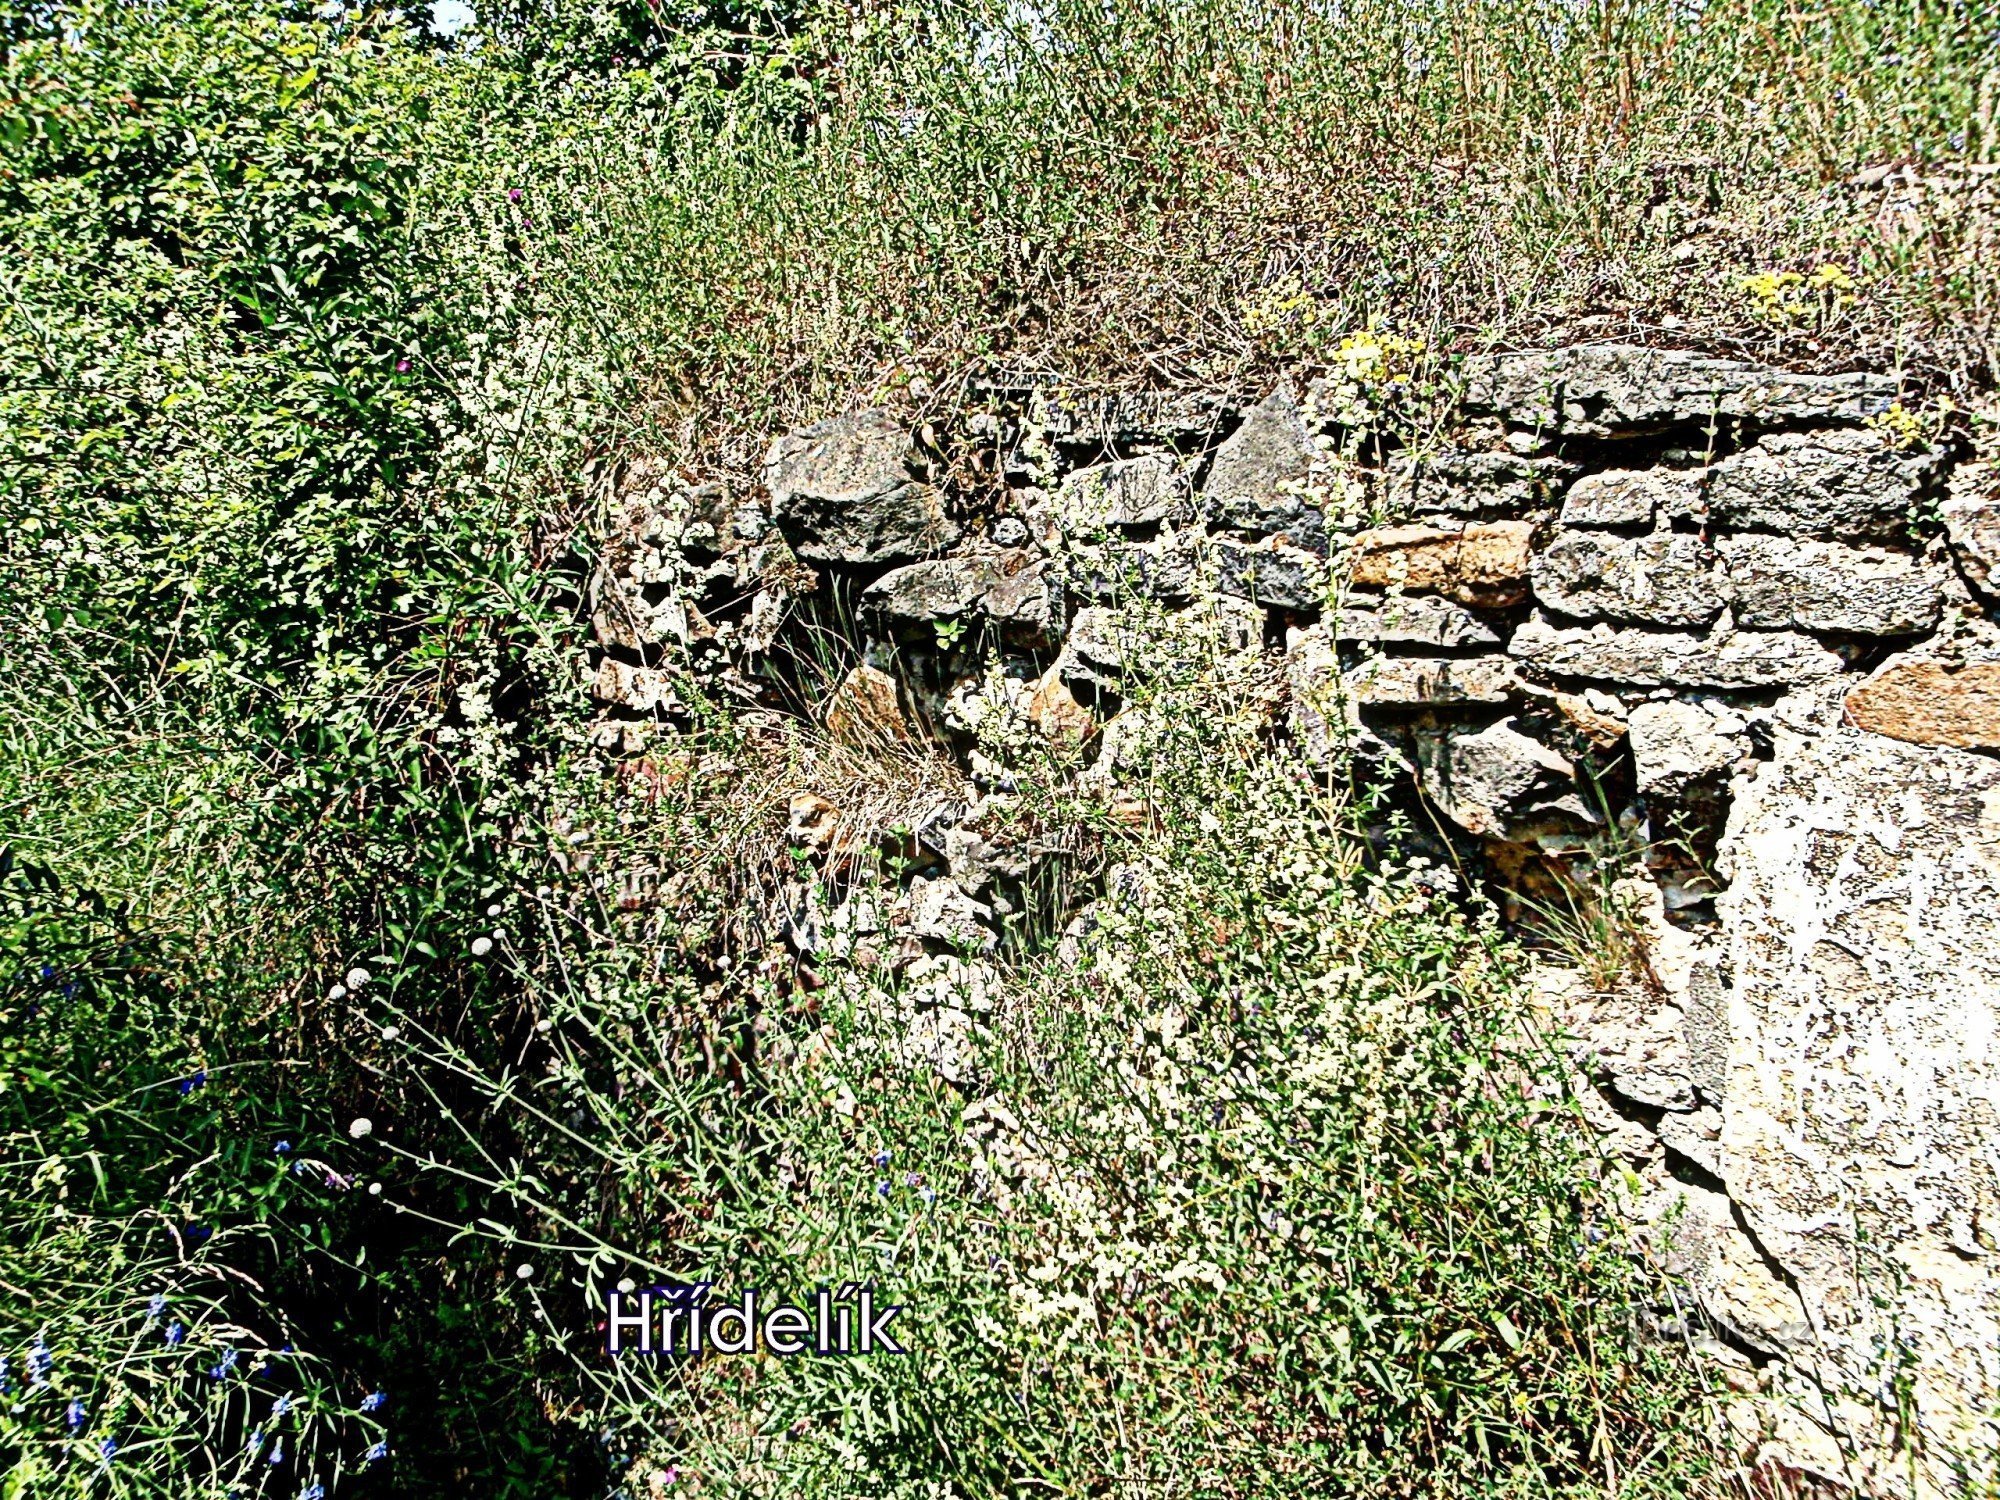 Blíževedly - Hřídelík城の遺跡